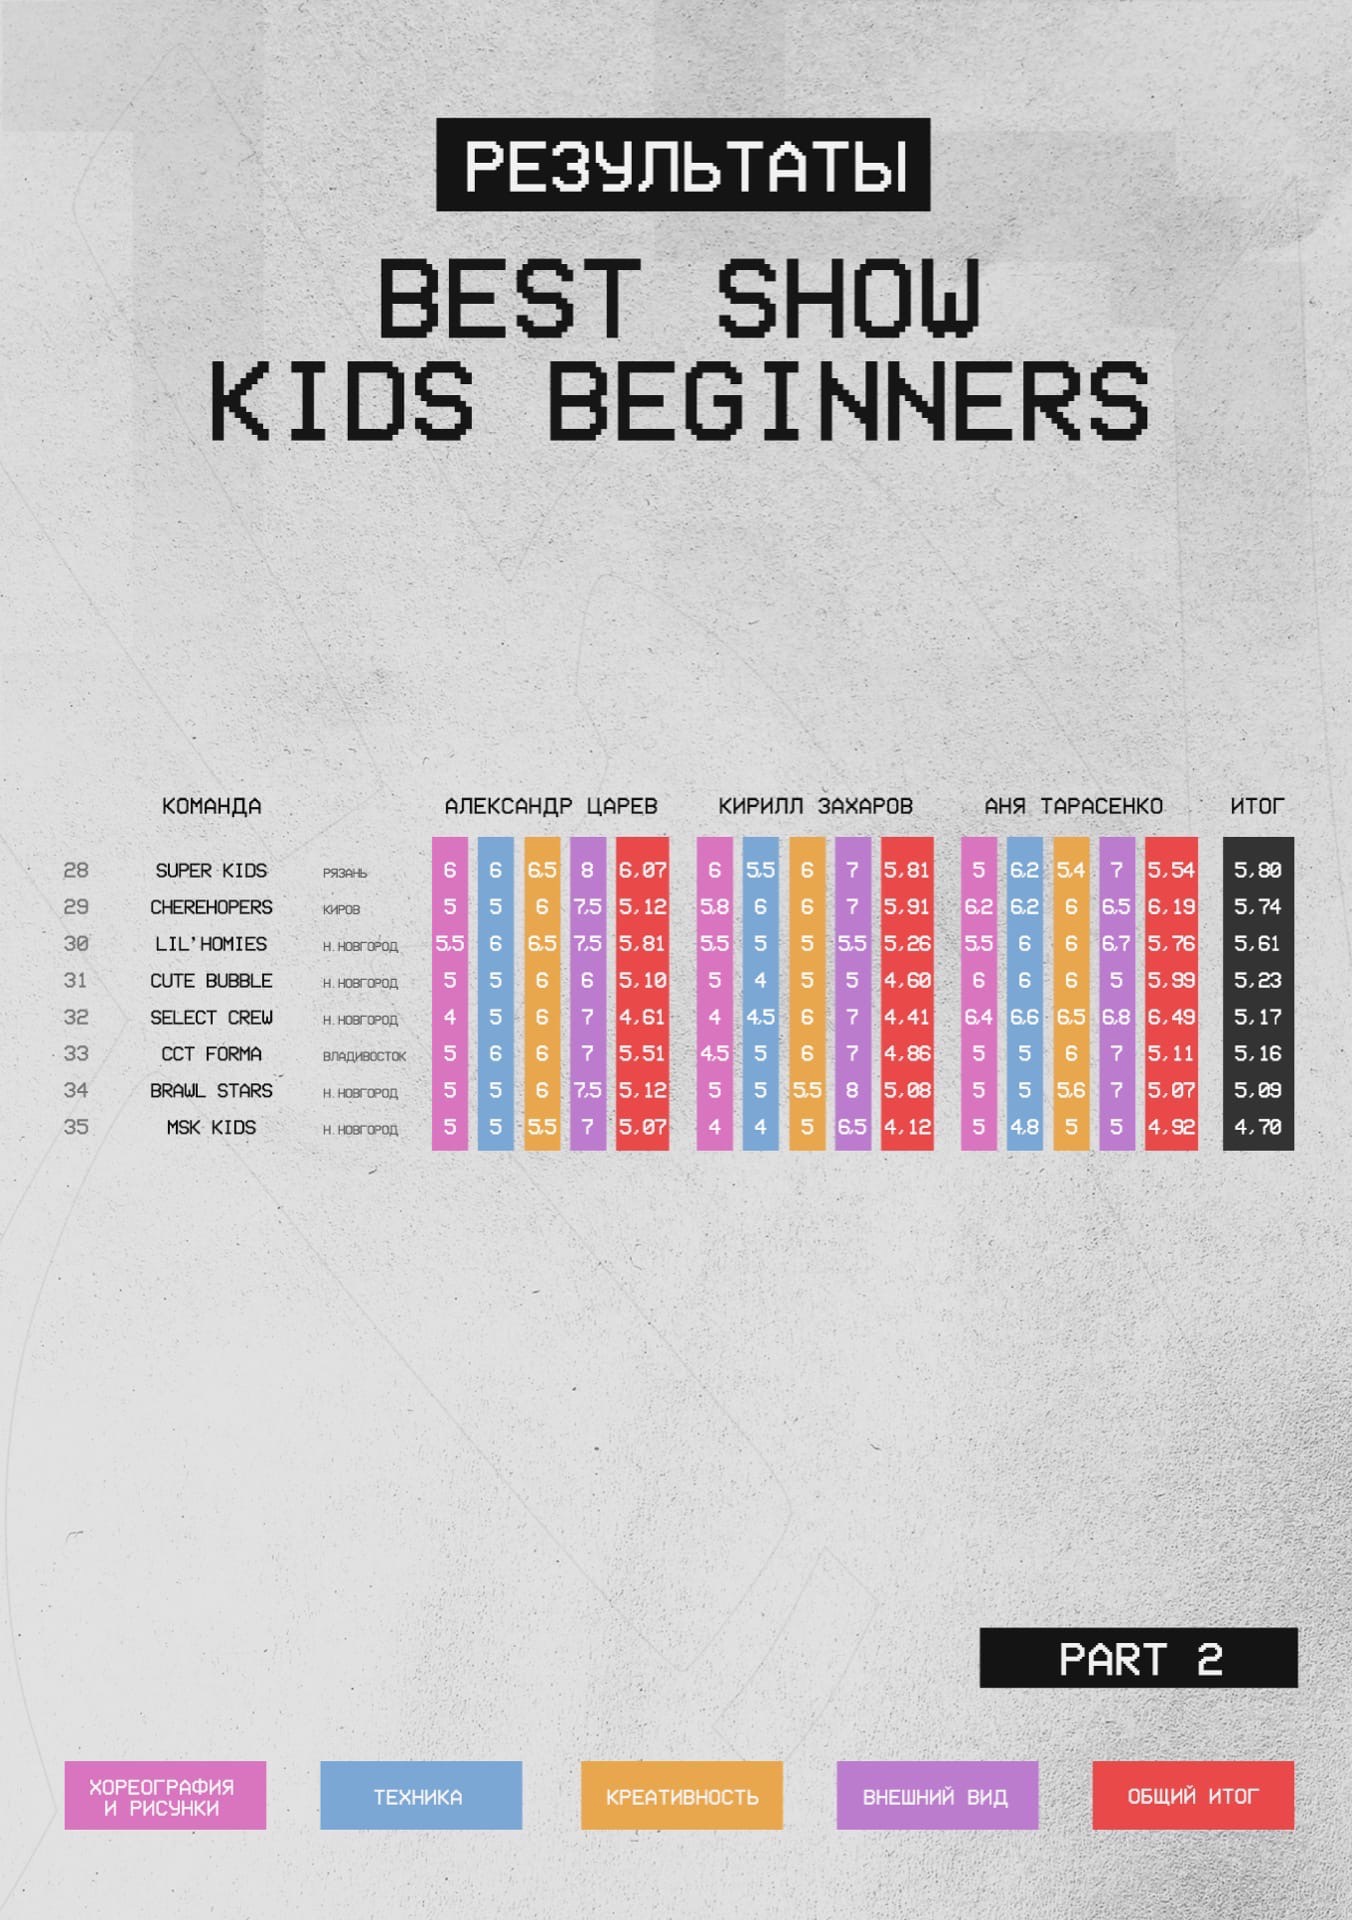 SHOW KIDS beginners